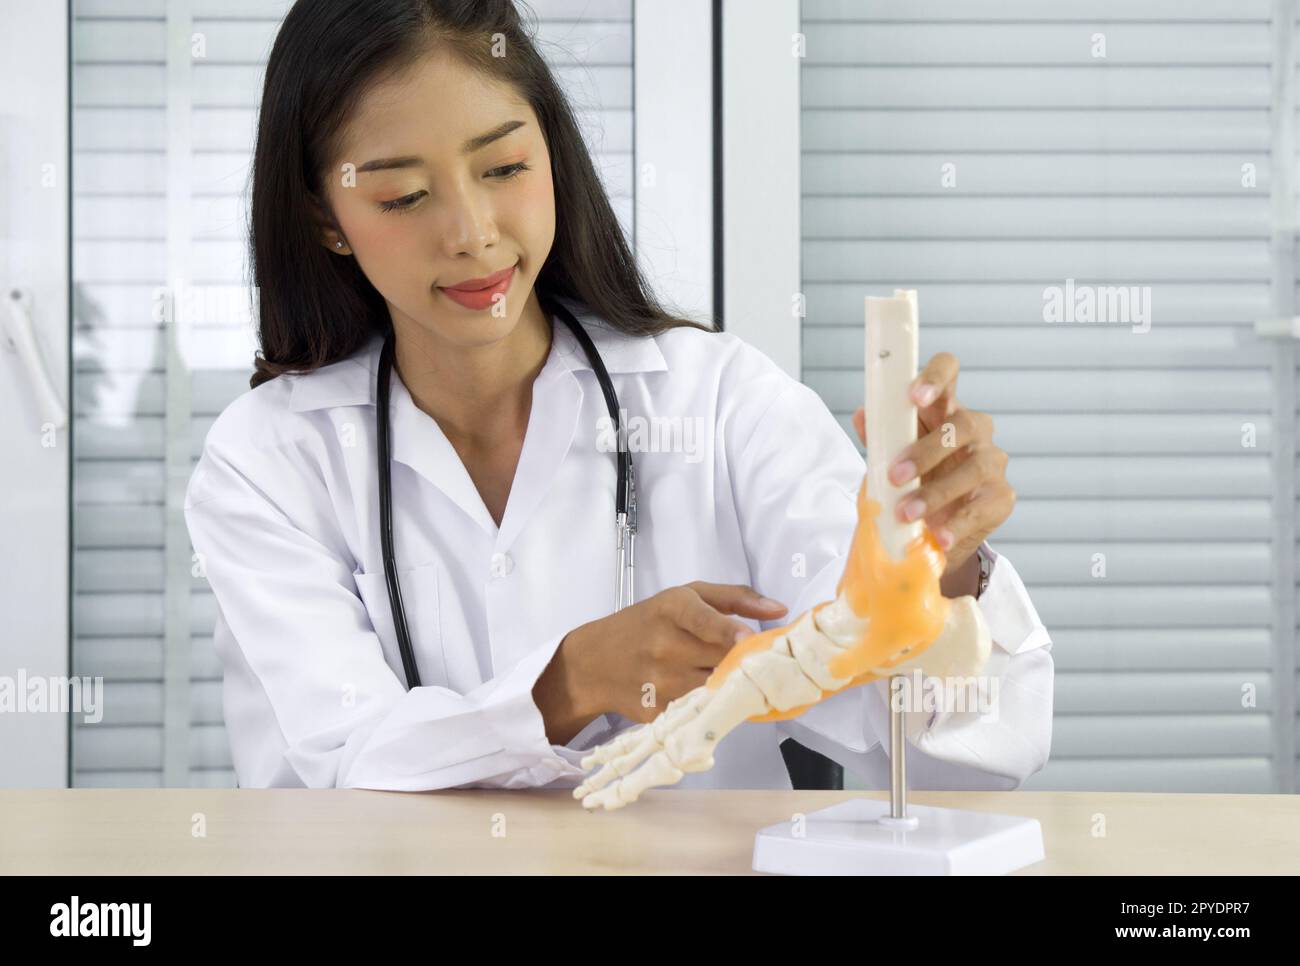 Junger asiatischer Arzt in weißem Kleid und Stethoskop, der auf das menschliche Skelett des Fußknöchelgelenkes zeigt, Anatomiemodell, dem Patienten über drahtlose Kommunikation präsentiert. Gesundheits- und Medizinkonzept. Stockfoto